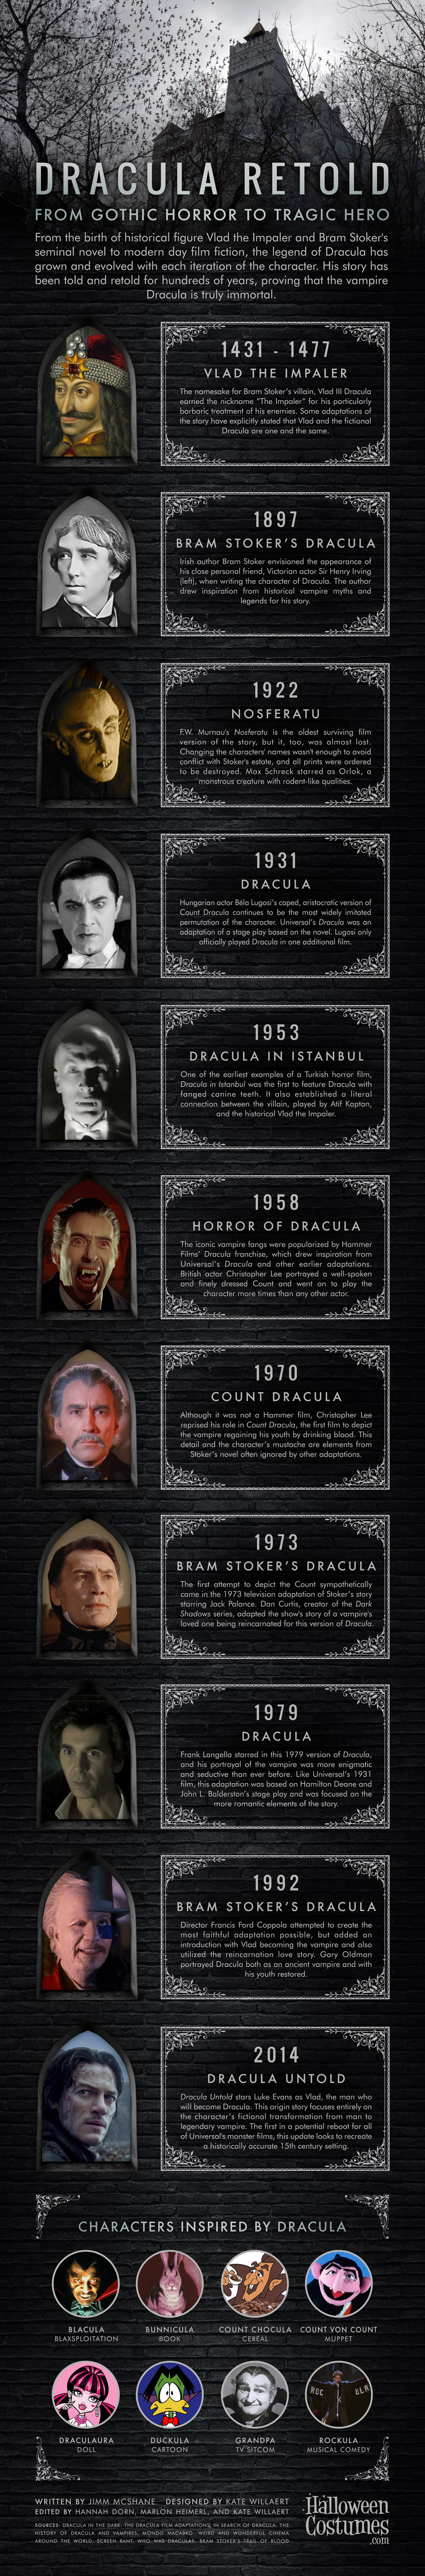 Dracula Retold: From Gothic Horror to Tragic Hero